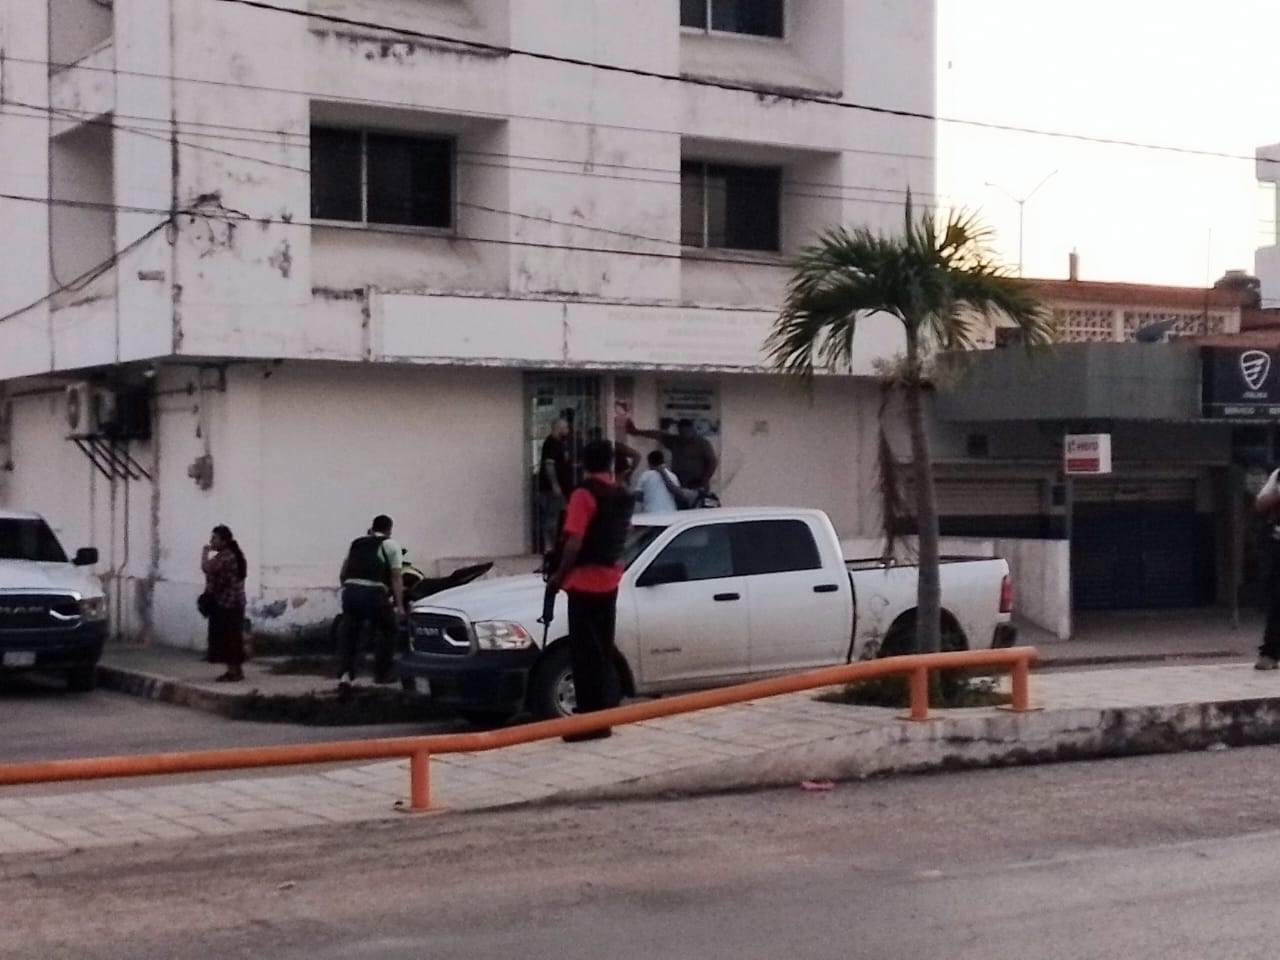 Detienen a dos hombres por intento de robo en el corralón de Candelaria, Campeche